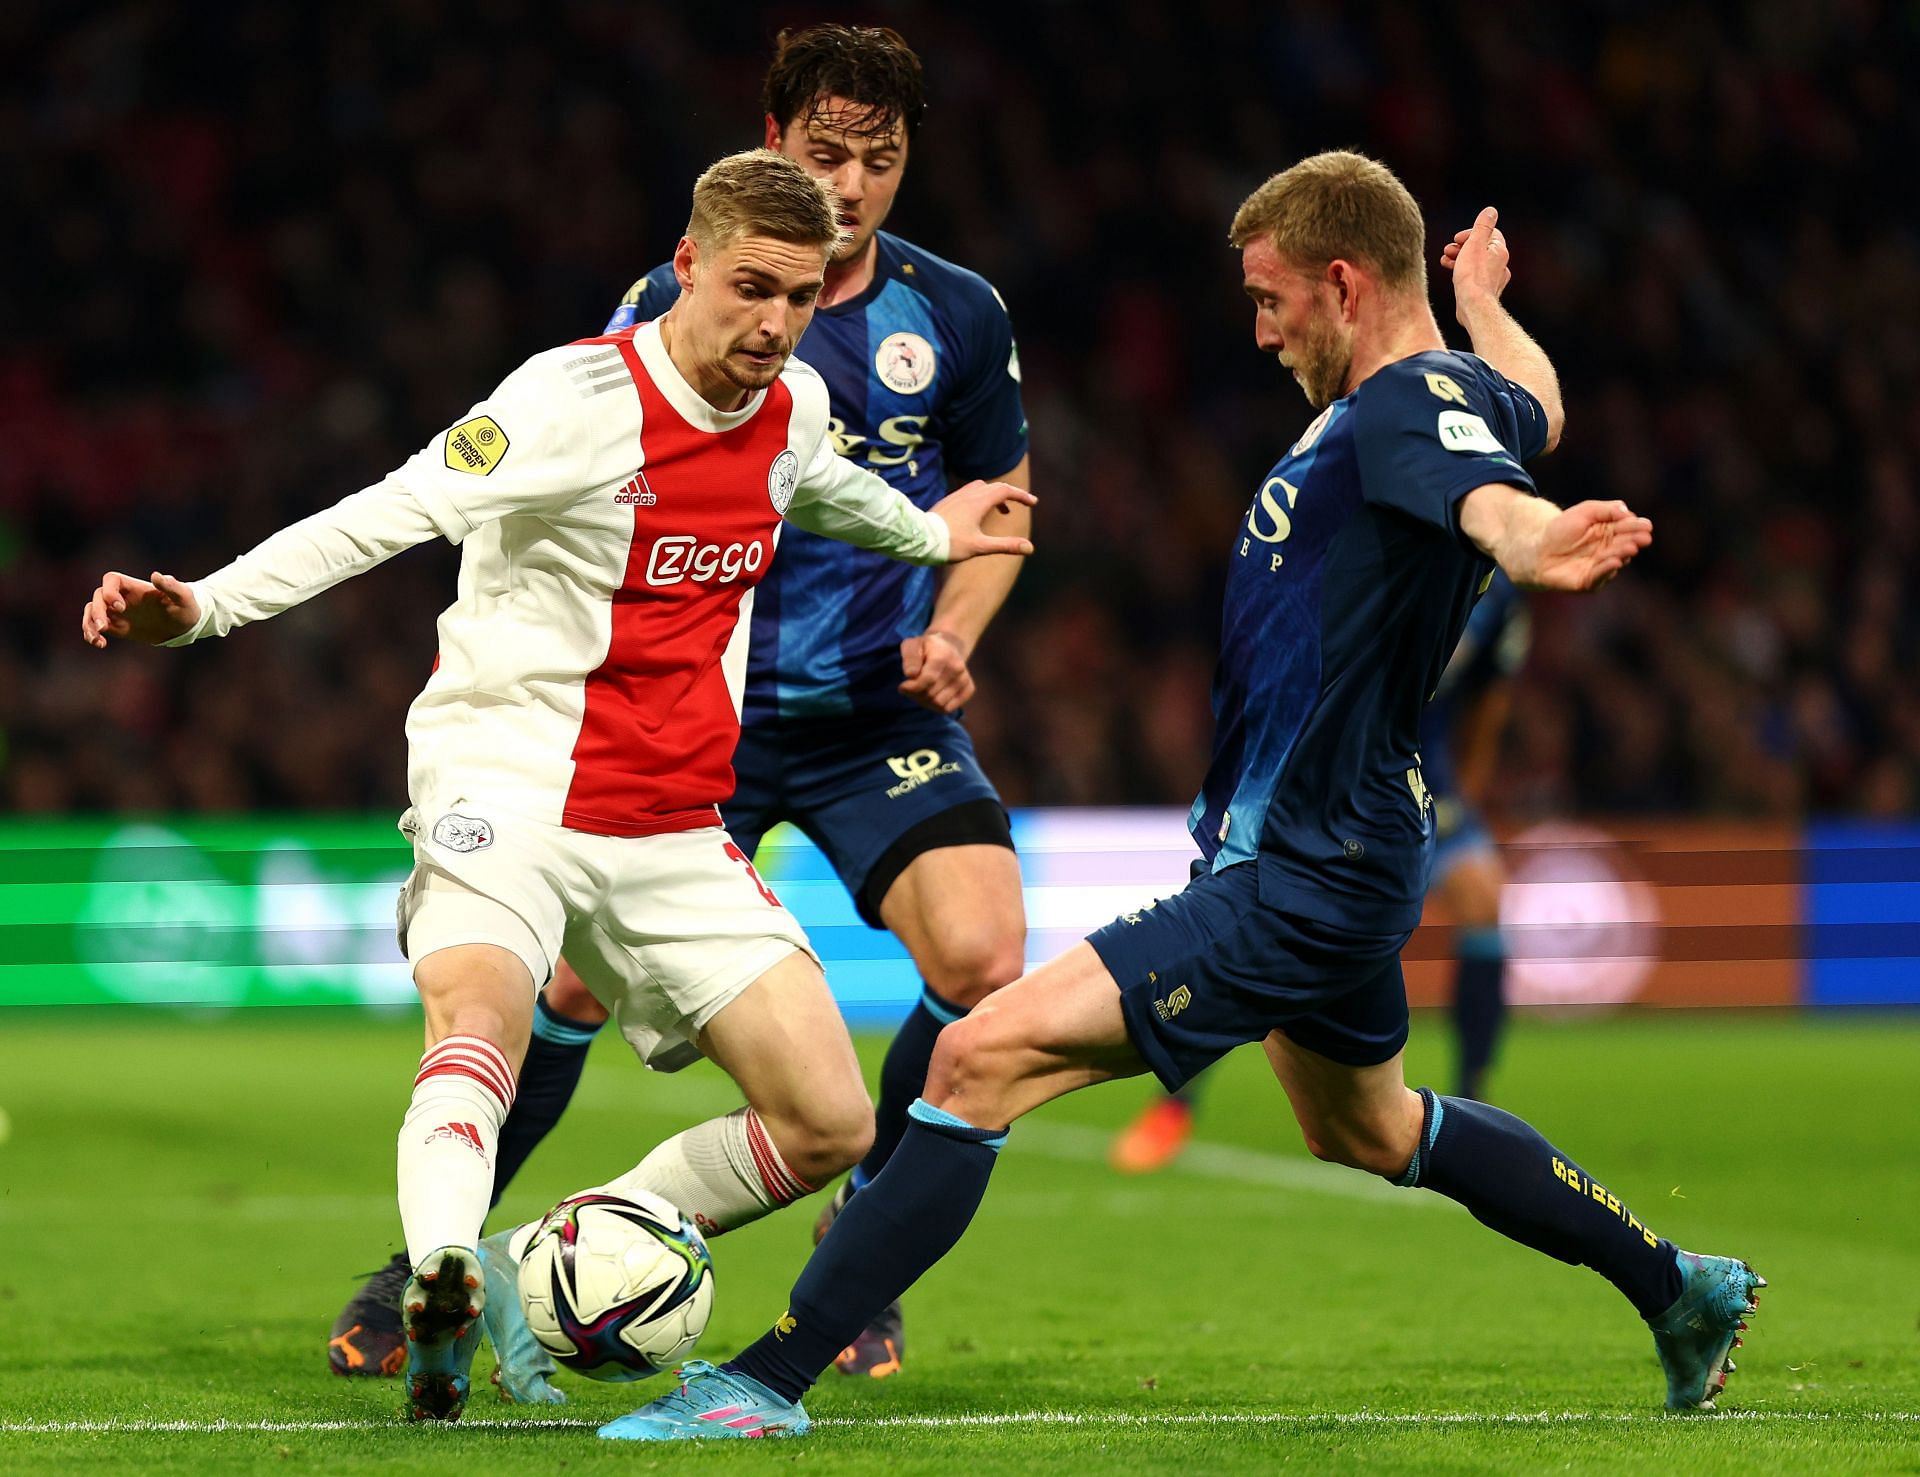 Sparta Rotterdam will face Twente on Friday - Dutch Eredivisie